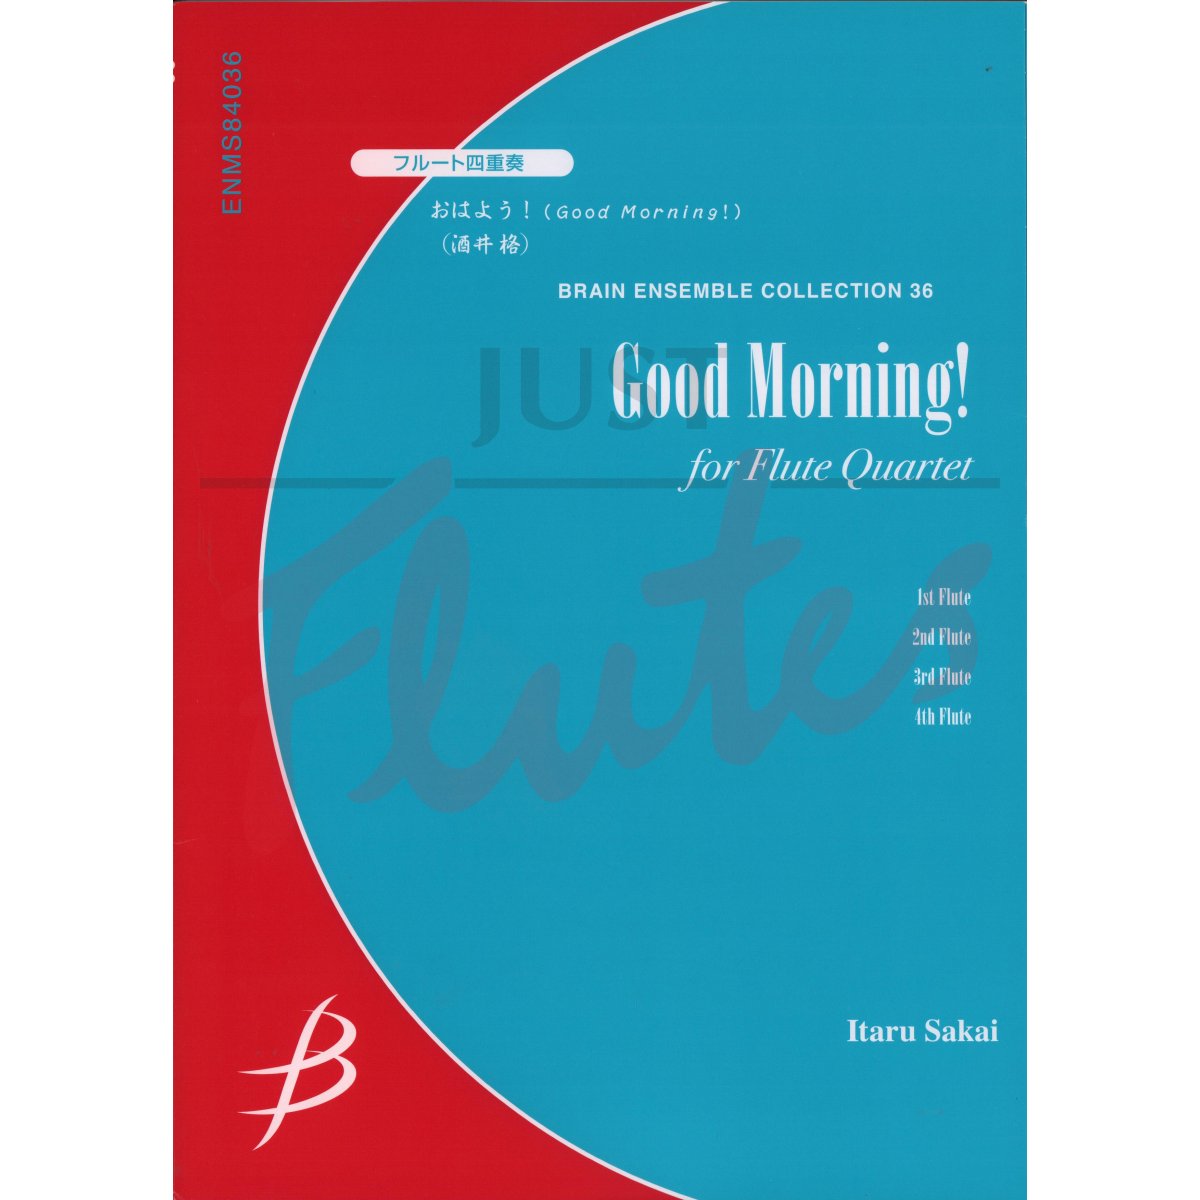 Good Morning! for Flute Quartet